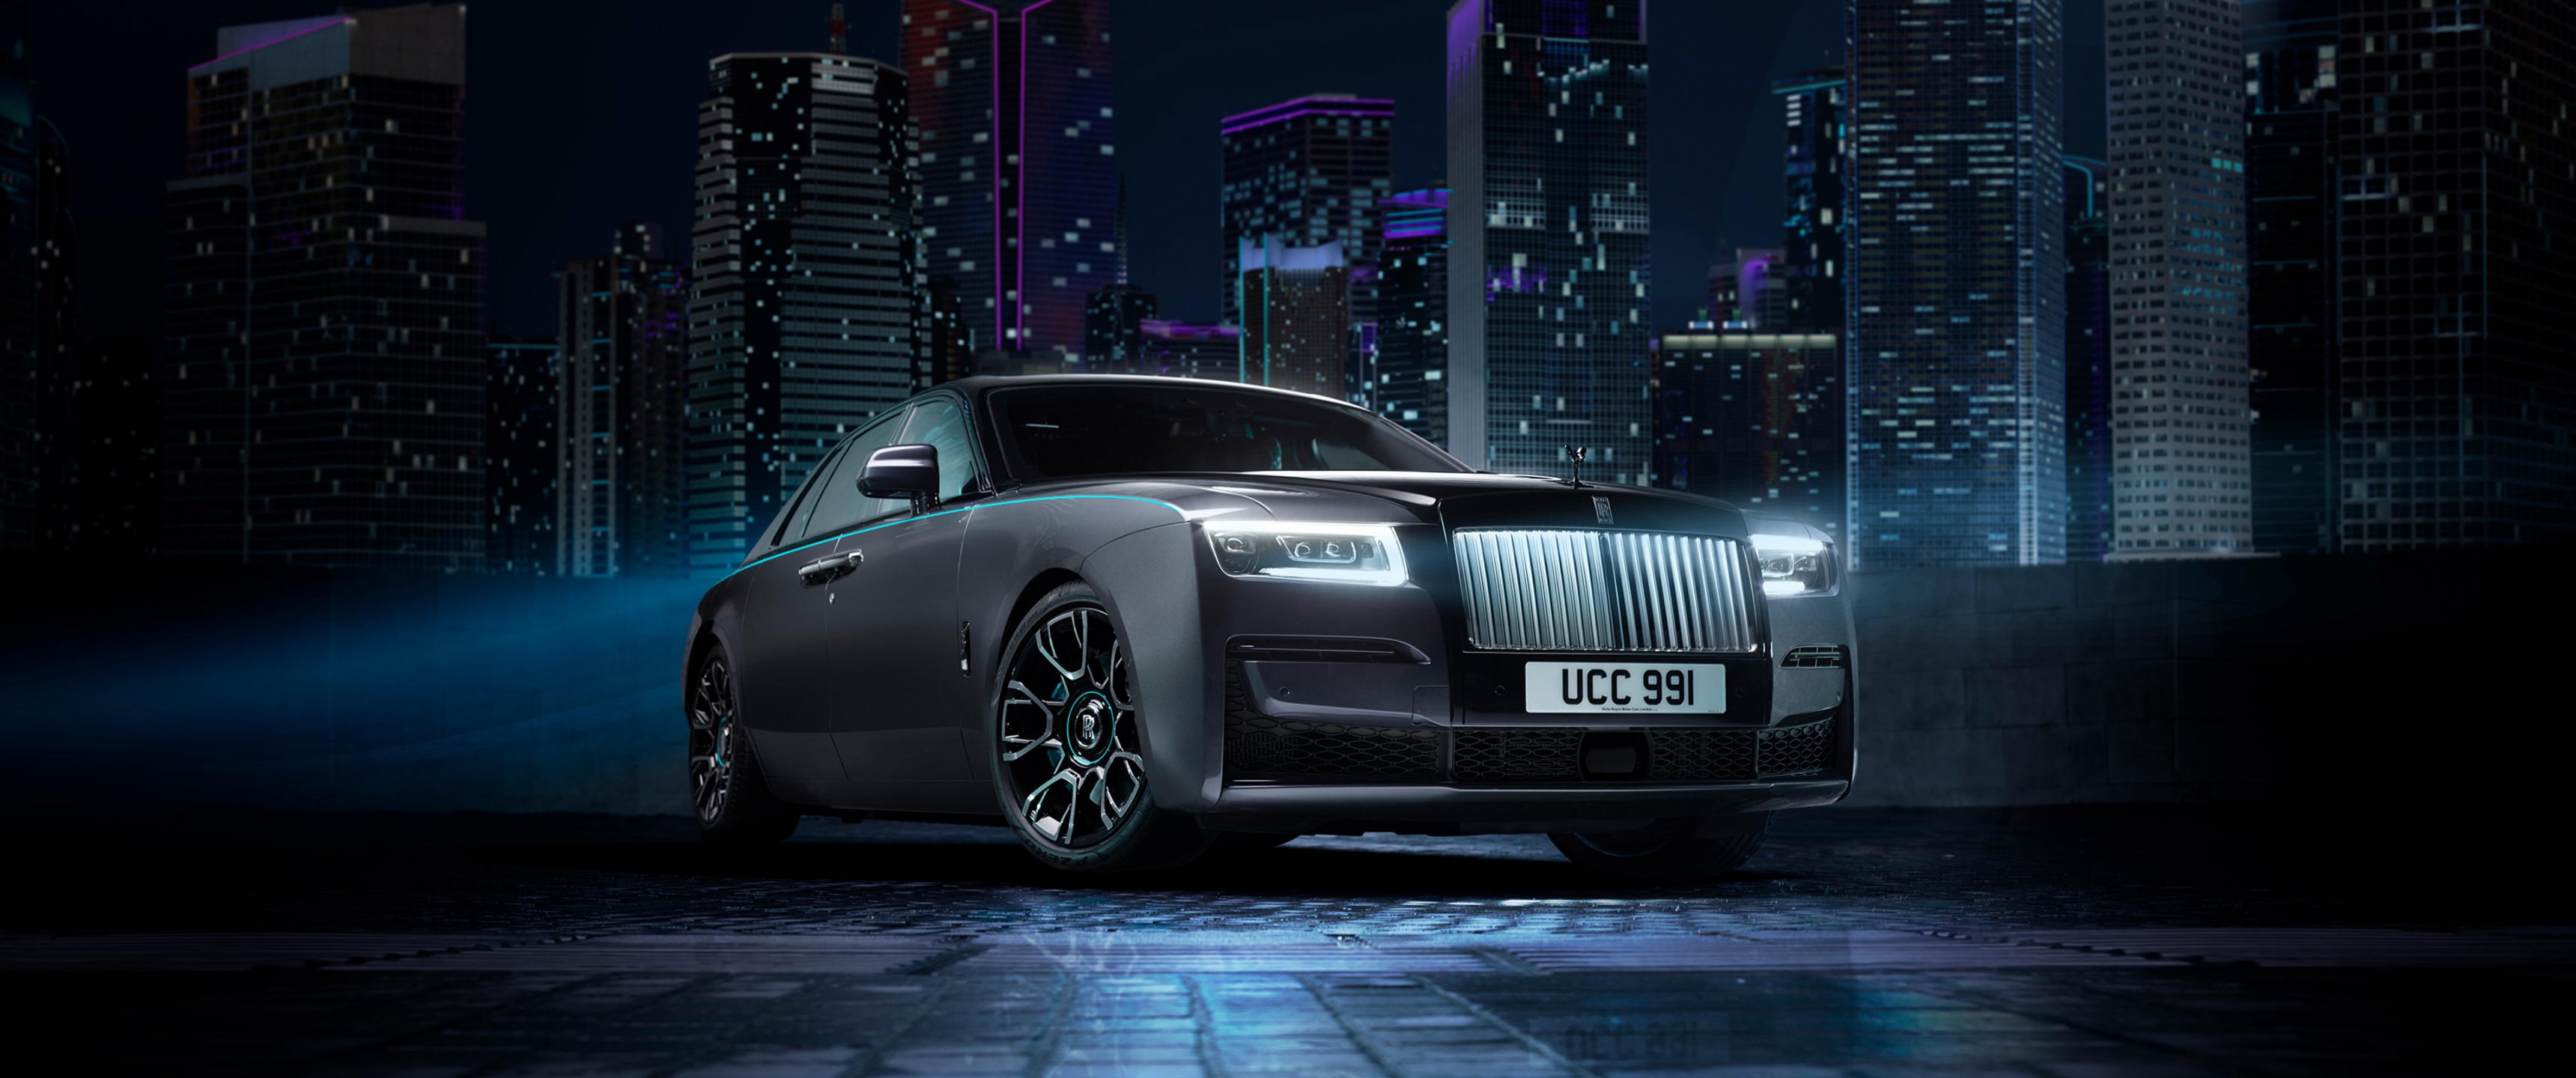 Rolls-Royce Ghost Black Badge Wallpaper 4K, 2021, Night, Car lights, Black/Dark,  #6838